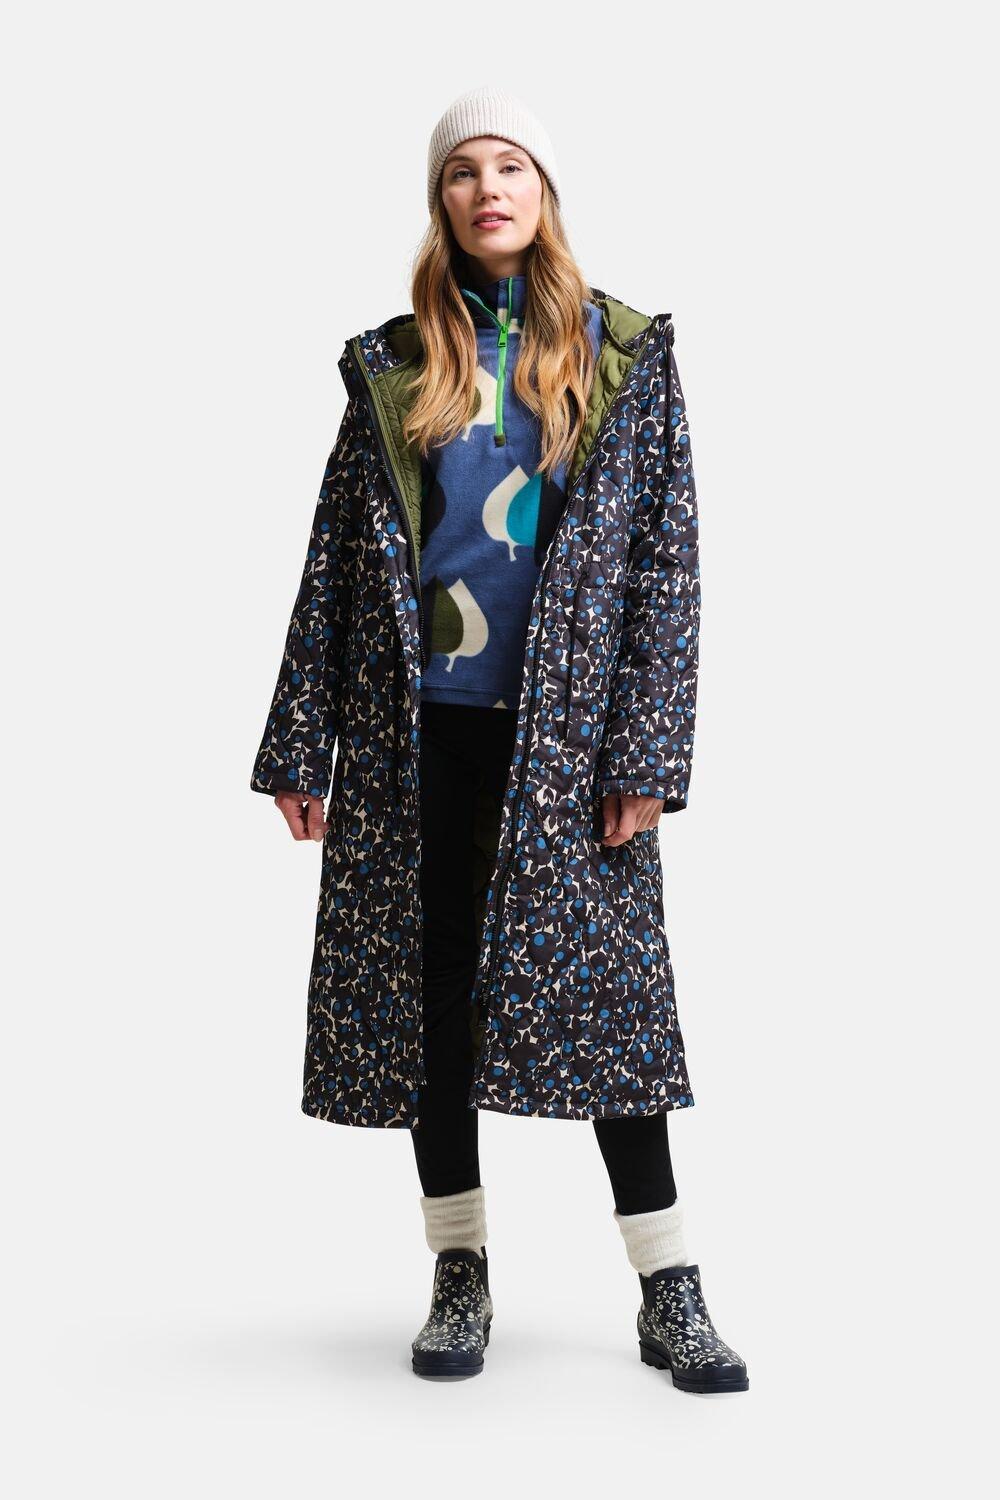 Удлиненная стеганая куртка Orla Kiely Regatta, синий женское кожаное пальто средней длины костюмный воротник плащ из овчины осенне зимнее пальто свободный силуэт натуральное пальто